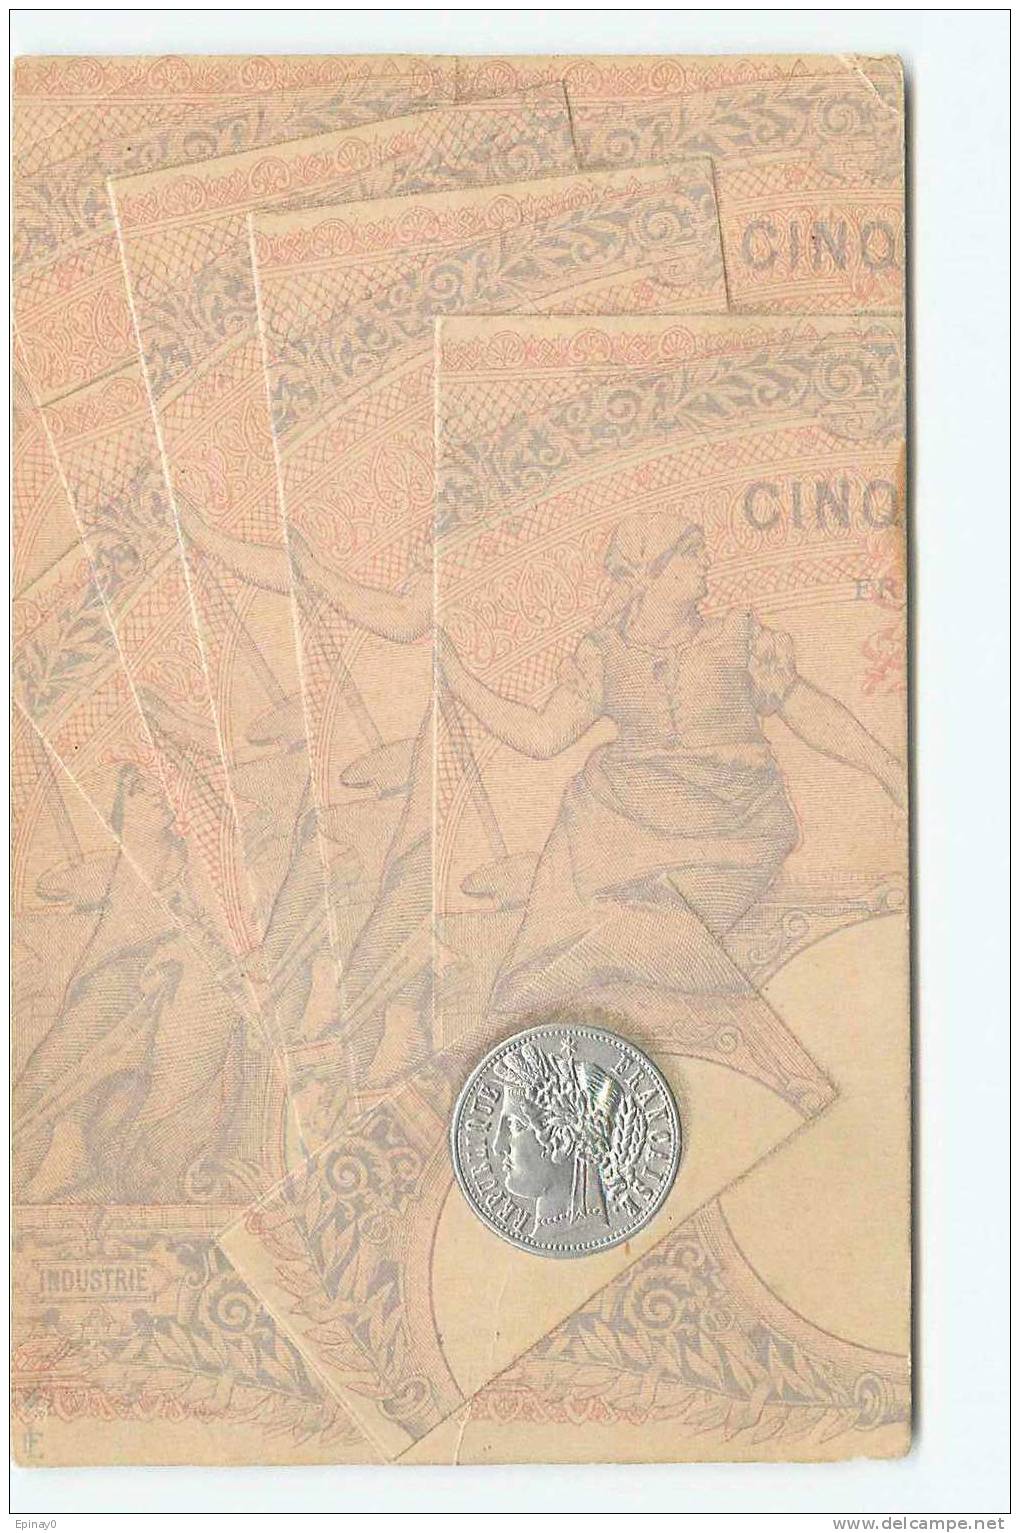 B - NUMISMATIQUE - Piéce Française - Billet - Franc - Carte Gaufrée - Münzen (Abb.)